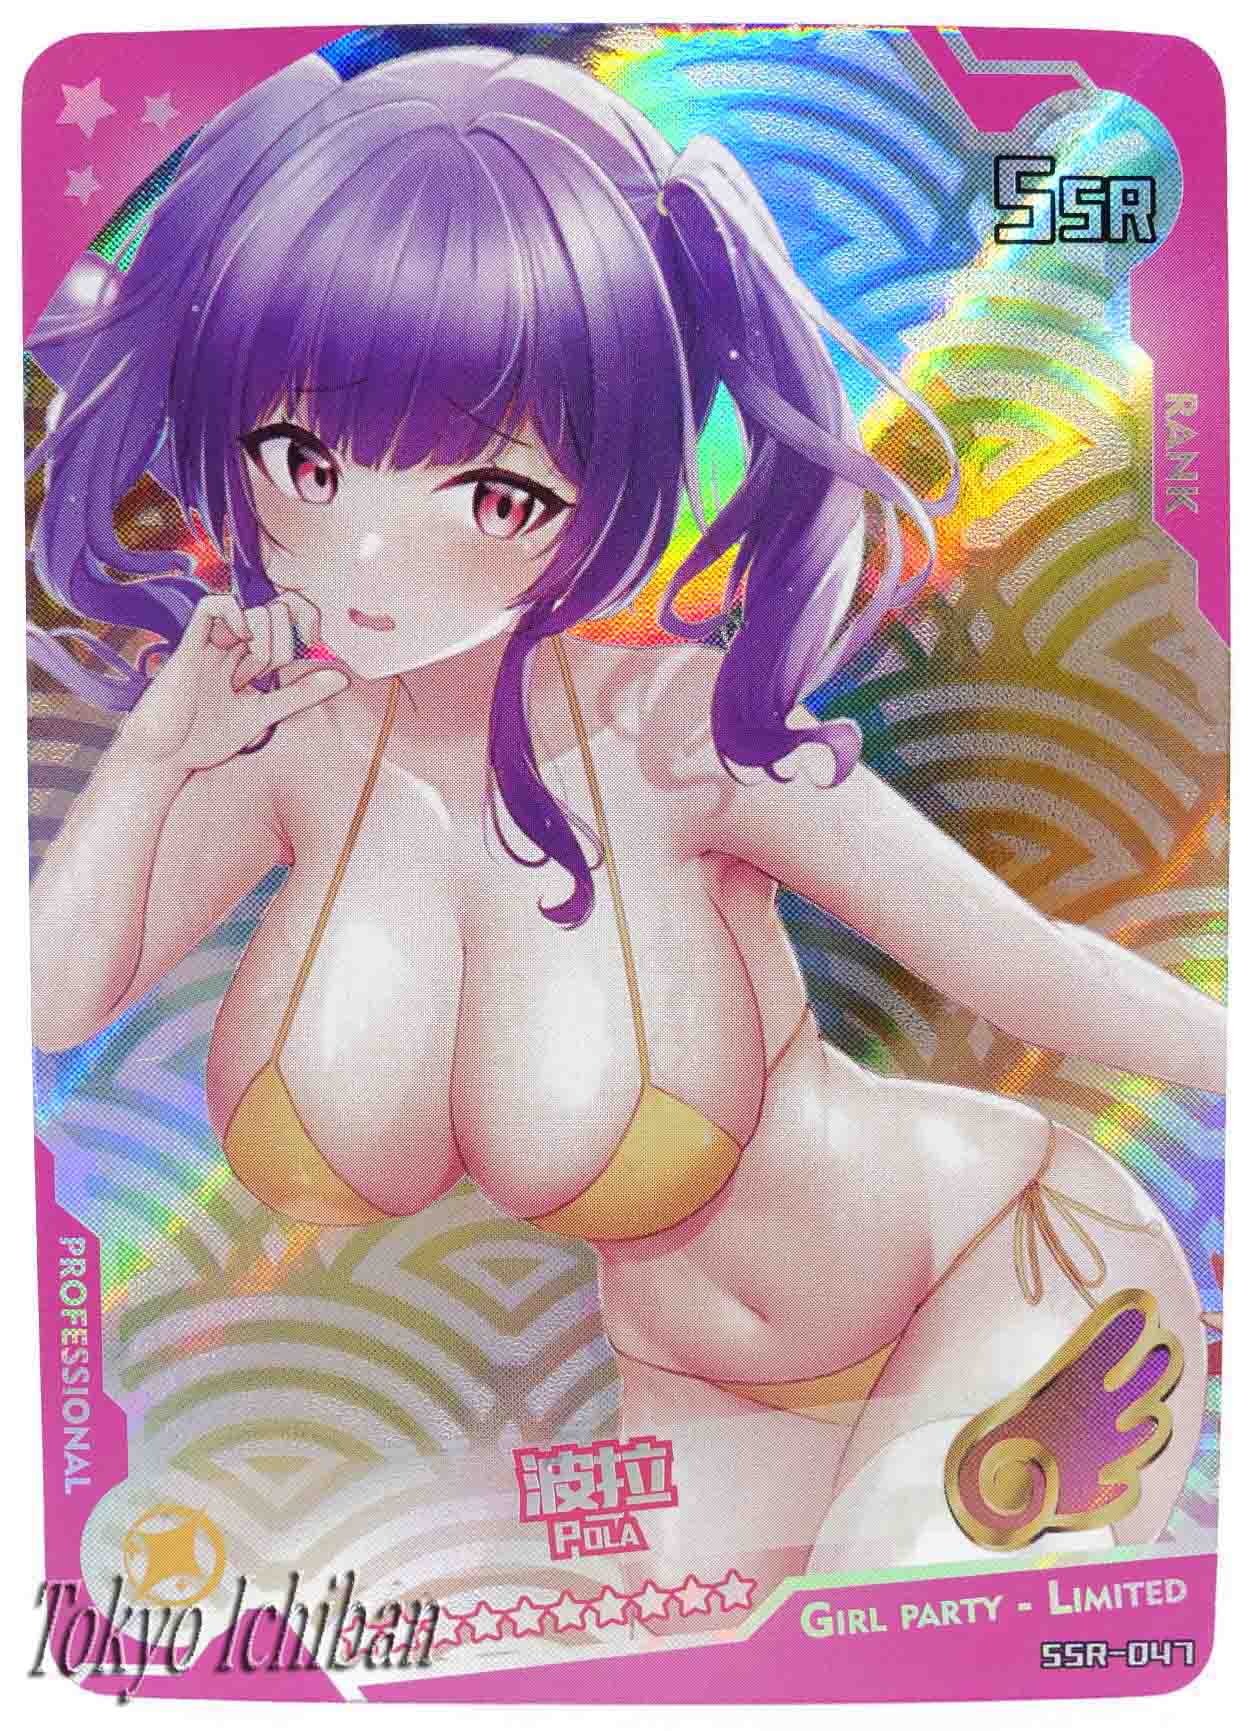 Sexy Card Azur Lane Pola Edition Limited SSR-047